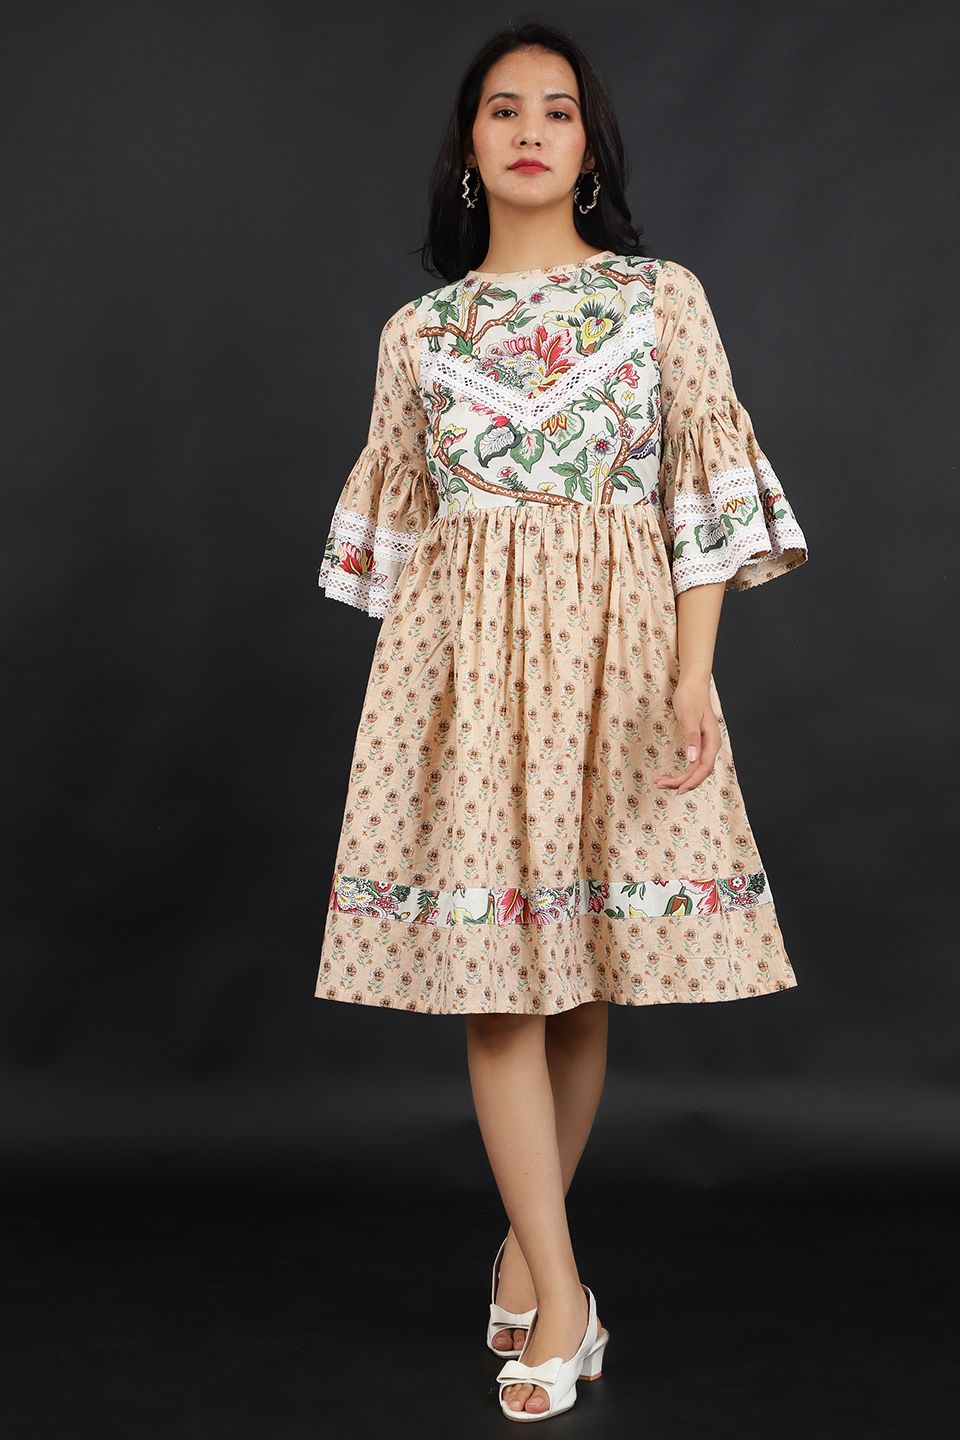 Jaipur Cotton Beige Dress(Test)